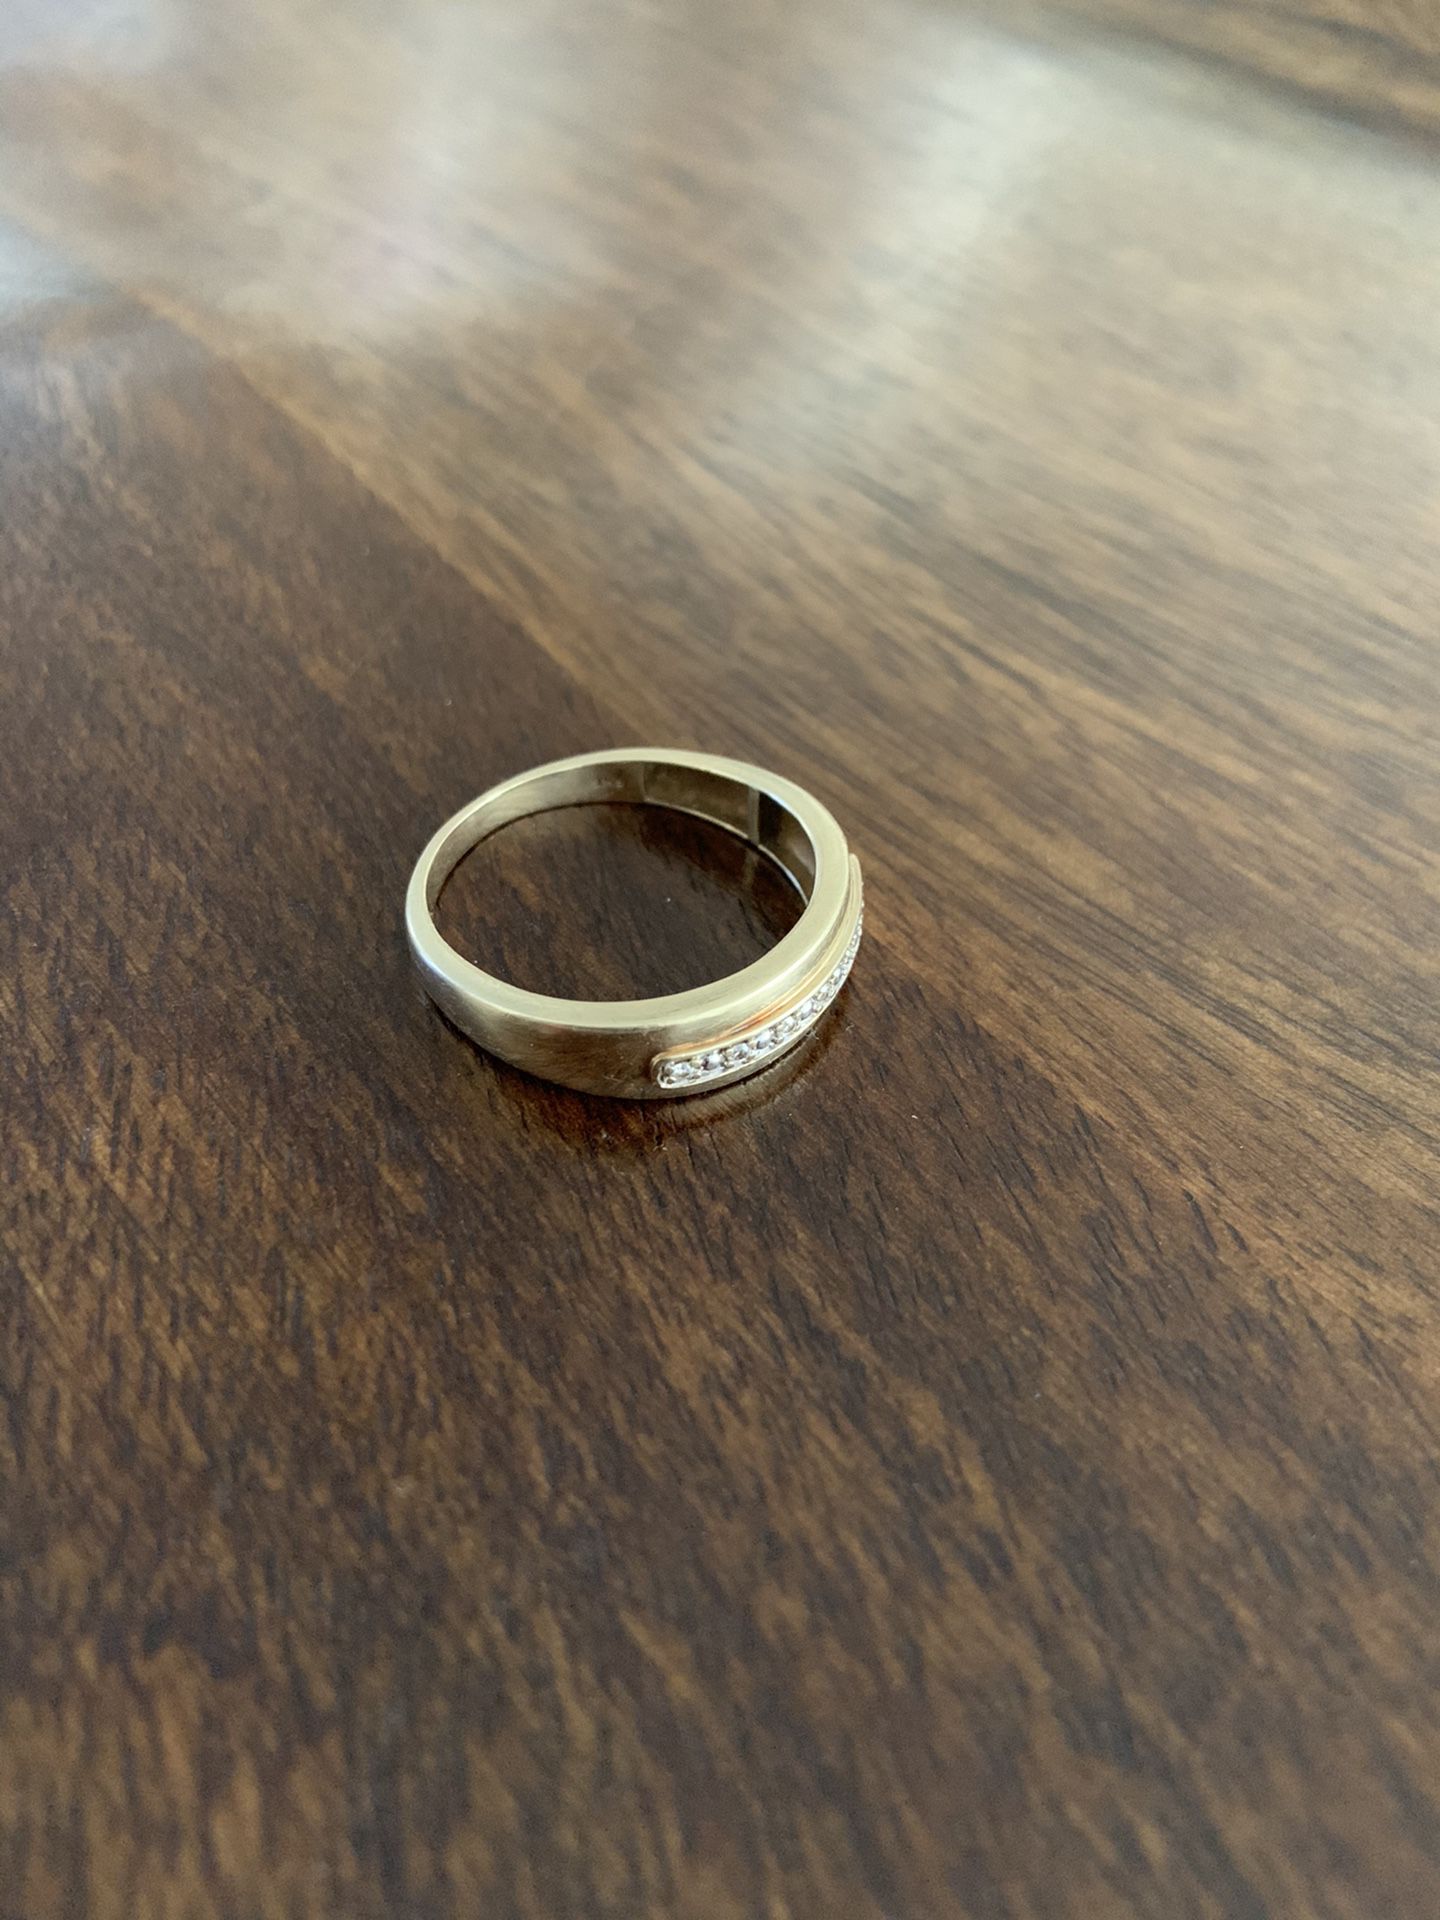 Men’s wedding ring 10k white gold